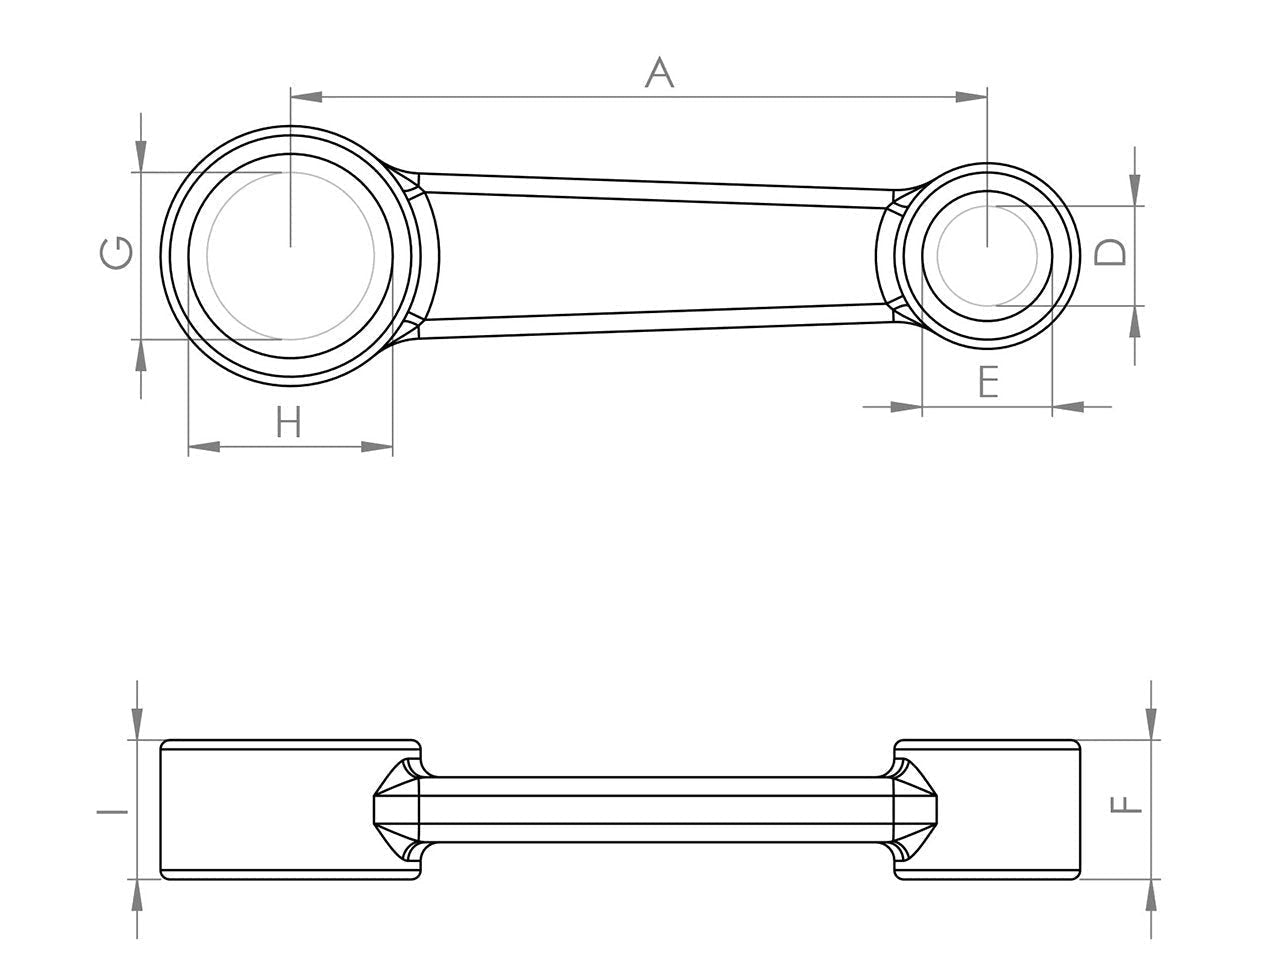 Zeichnung Barikit Pleuel für einen Honda CR 125 Motor mit Bemaßung.